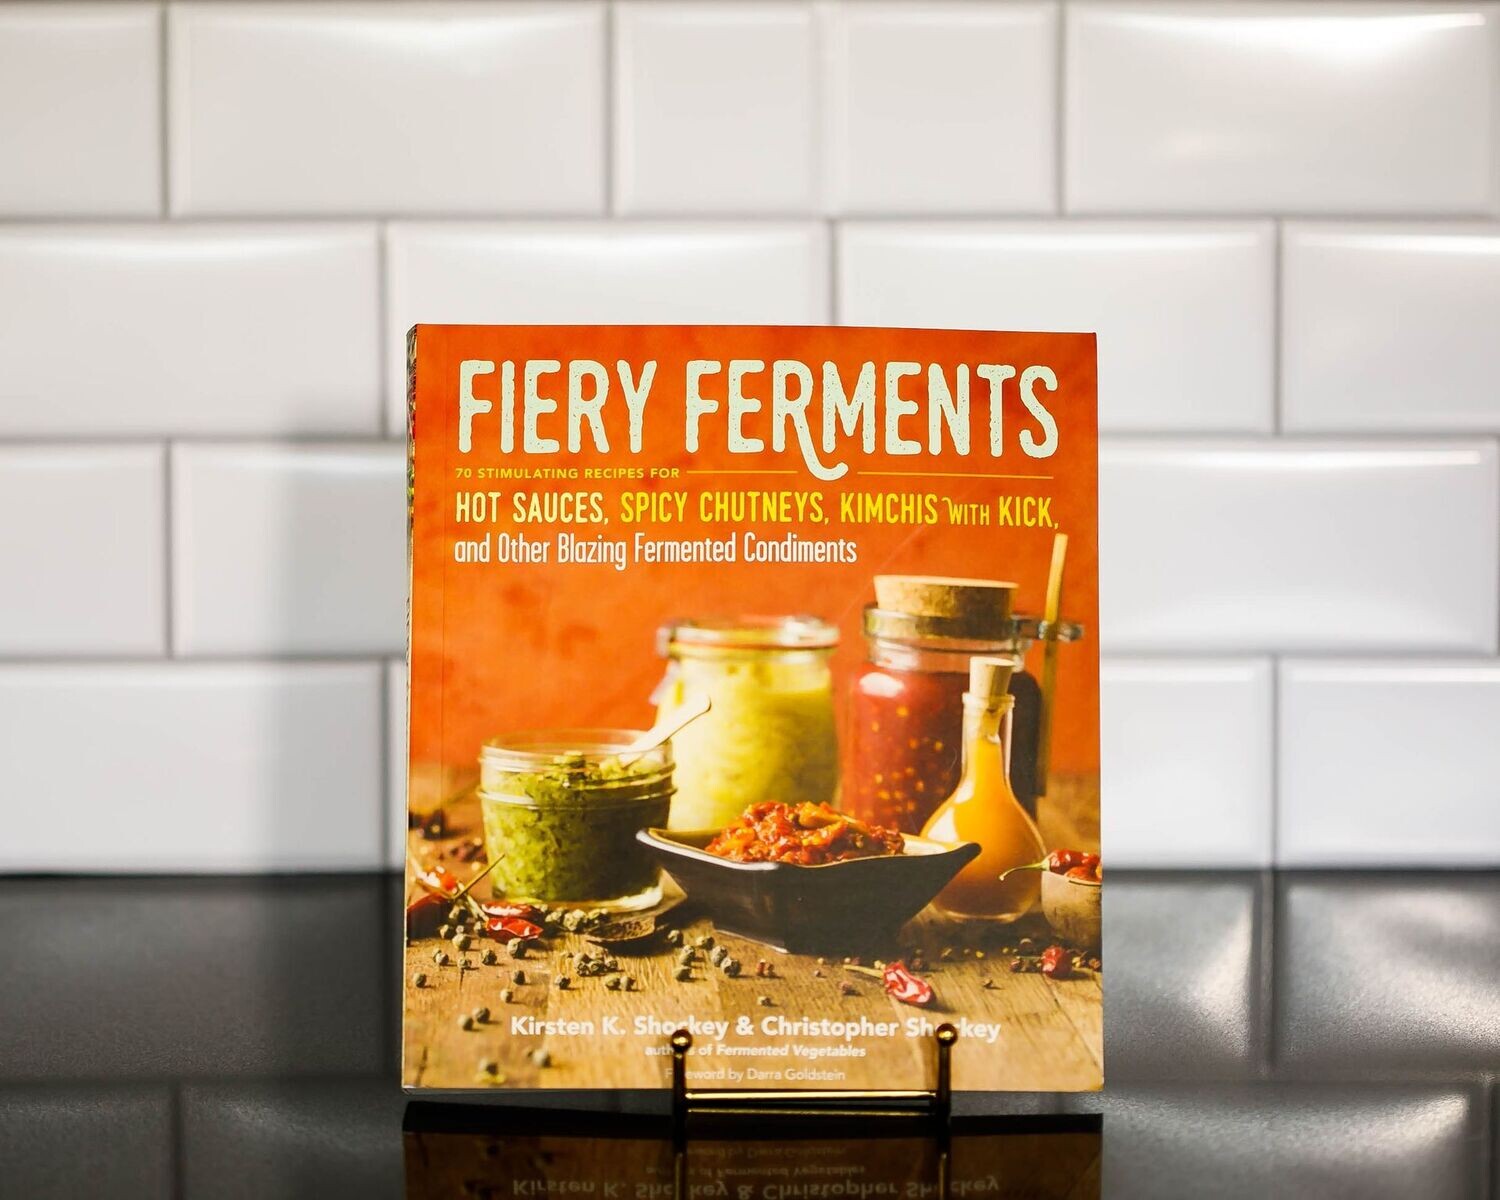 Fiery Ferments